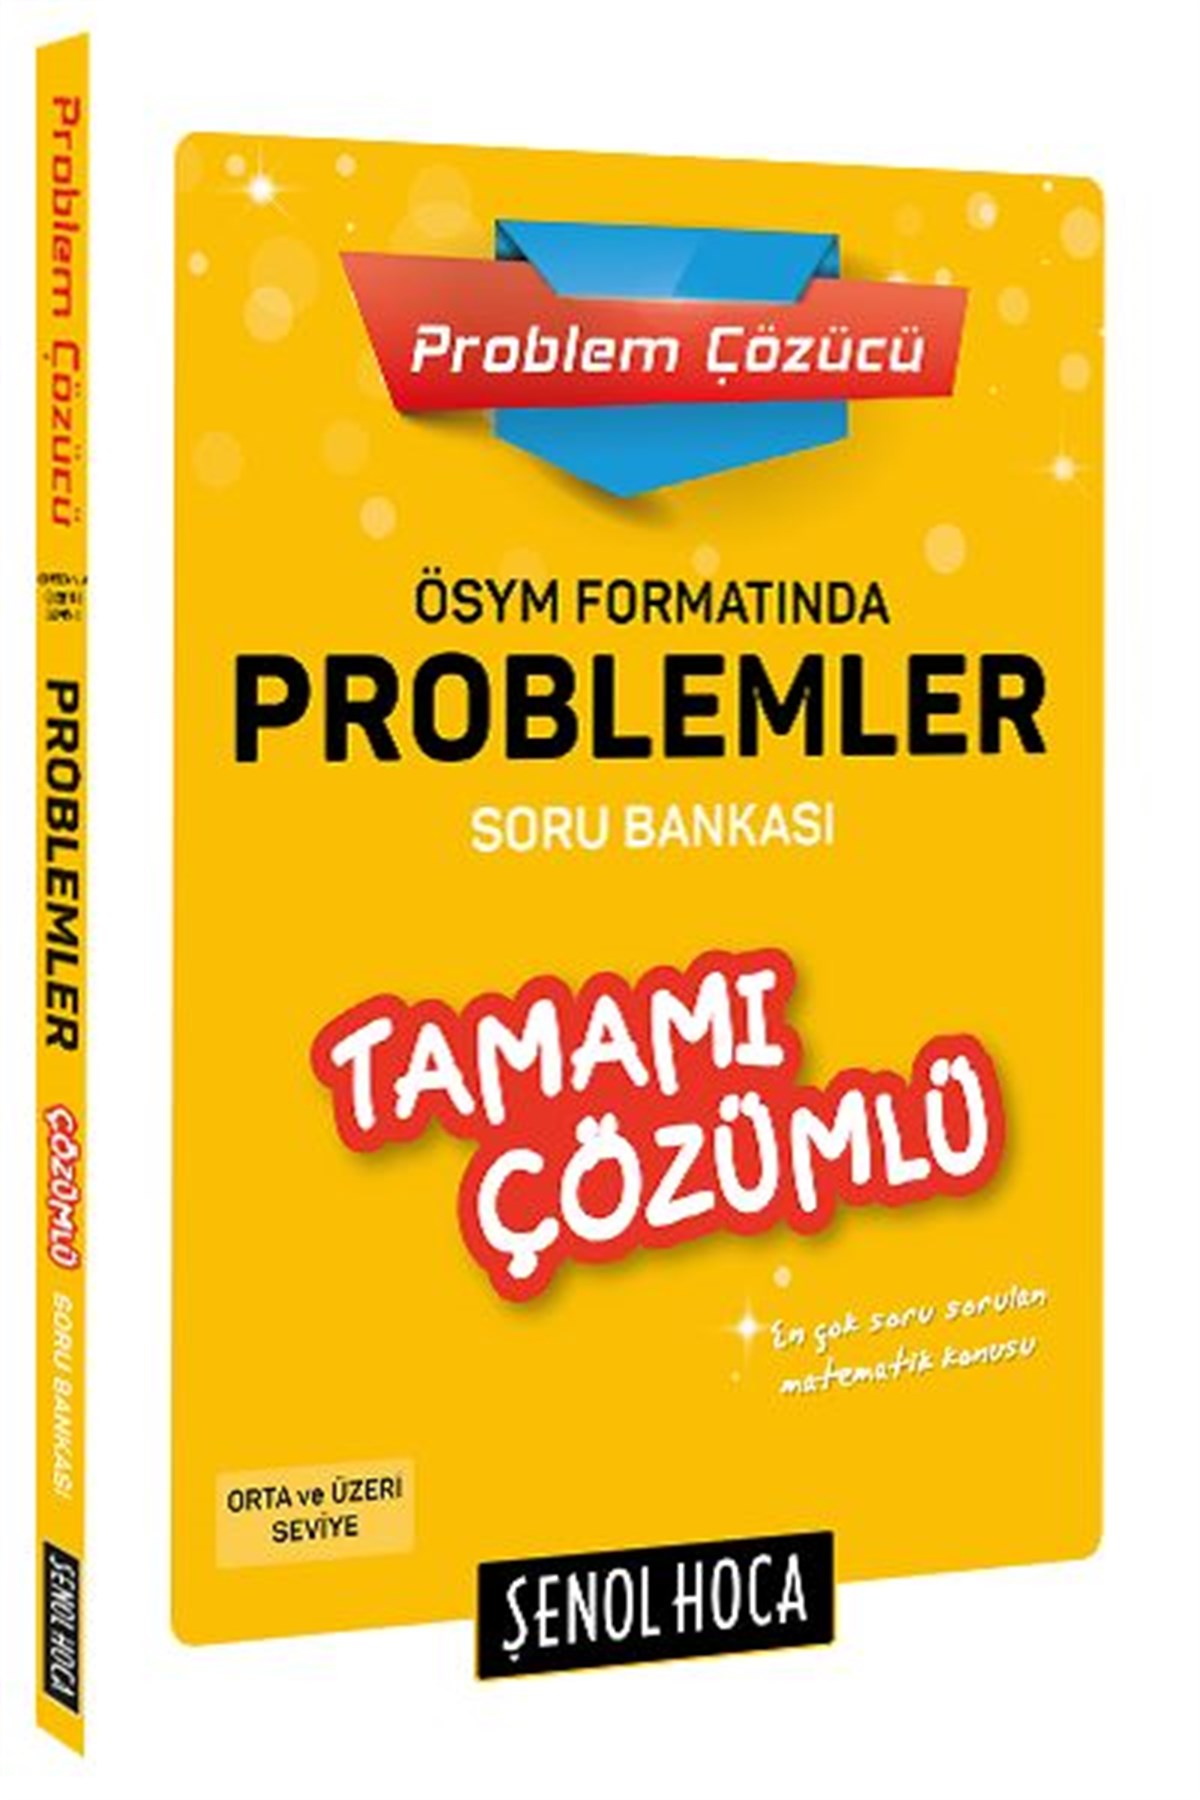 ÖSYM Formatında Problemler Tamamı Çözümlü Soru Bankası Şenol Hoca Yayınları